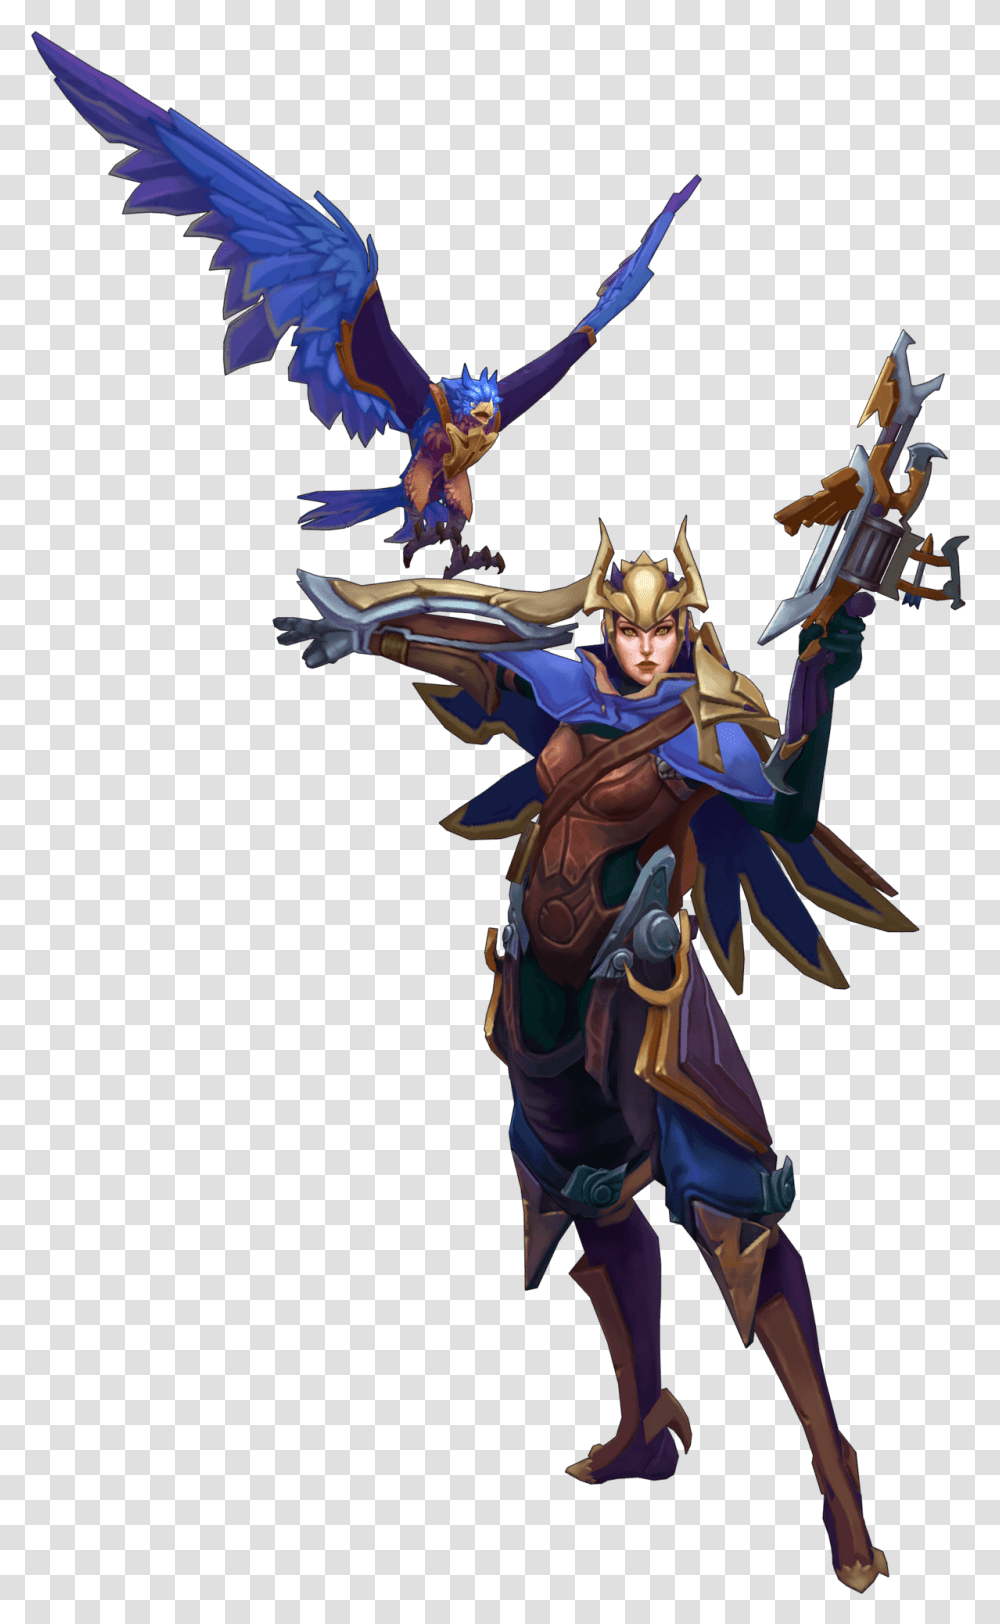 Quinn League Of Legends Concept Art, World Of Warcraft, Bird, Animal, Person Transparent Png